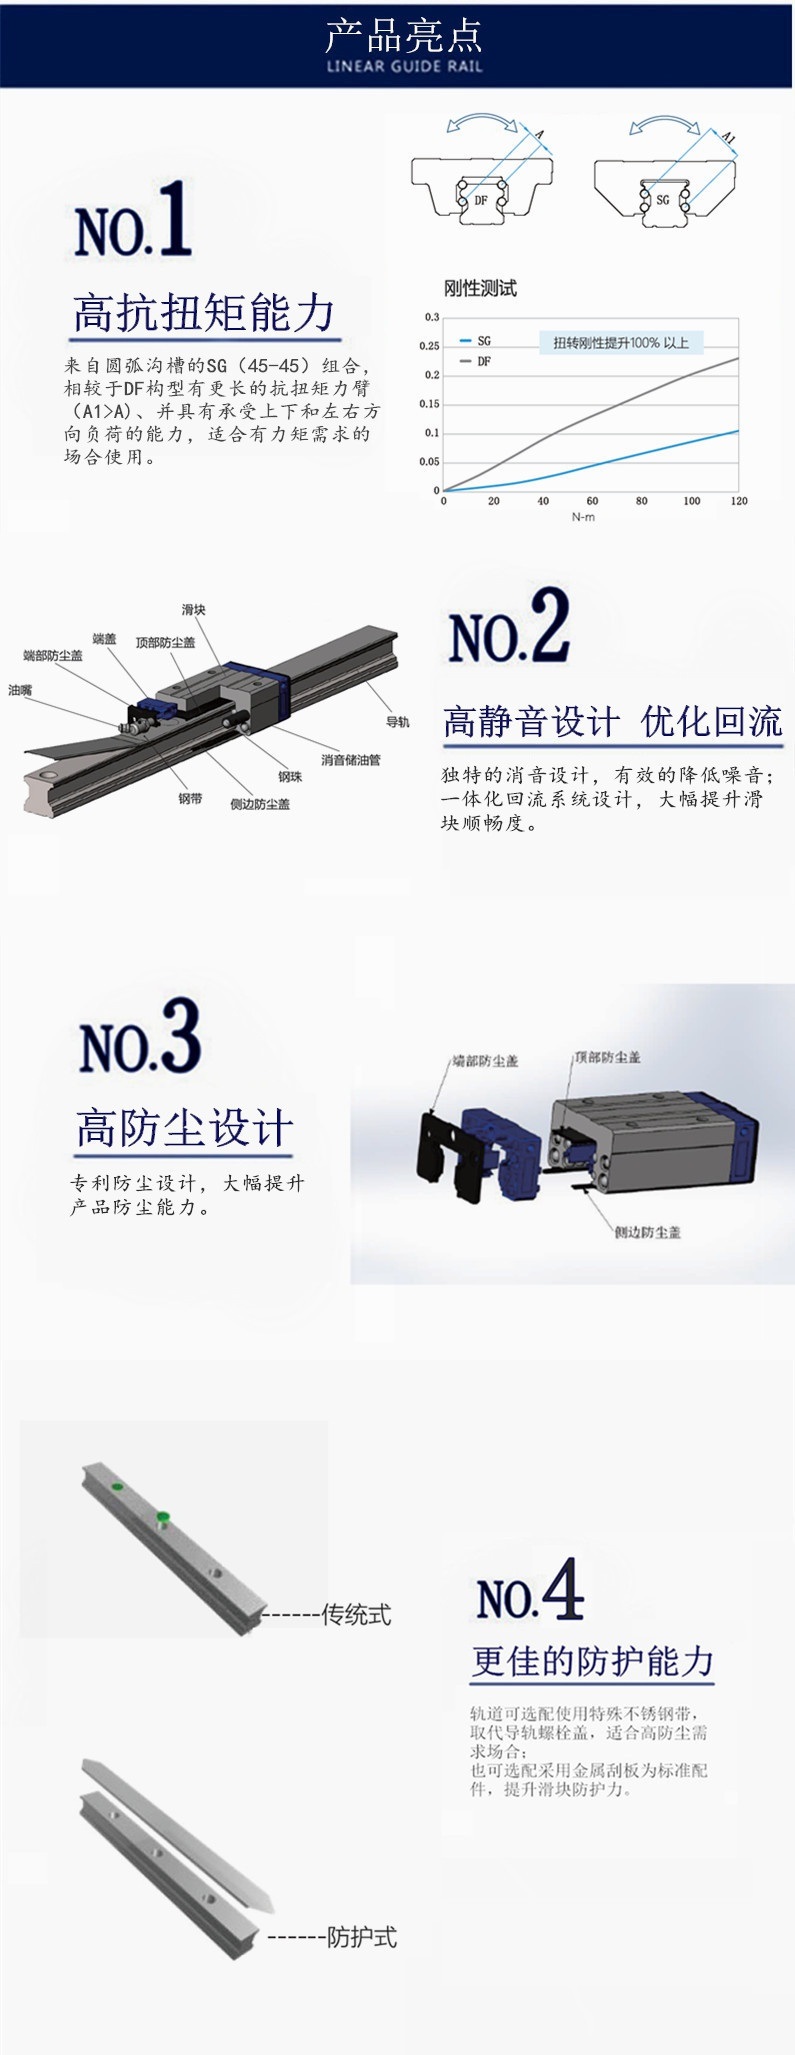 SMS45bl Slide Rail Dust Belt, Guide Rail Model, Guide Rail, DIN Rail, Rail Slide